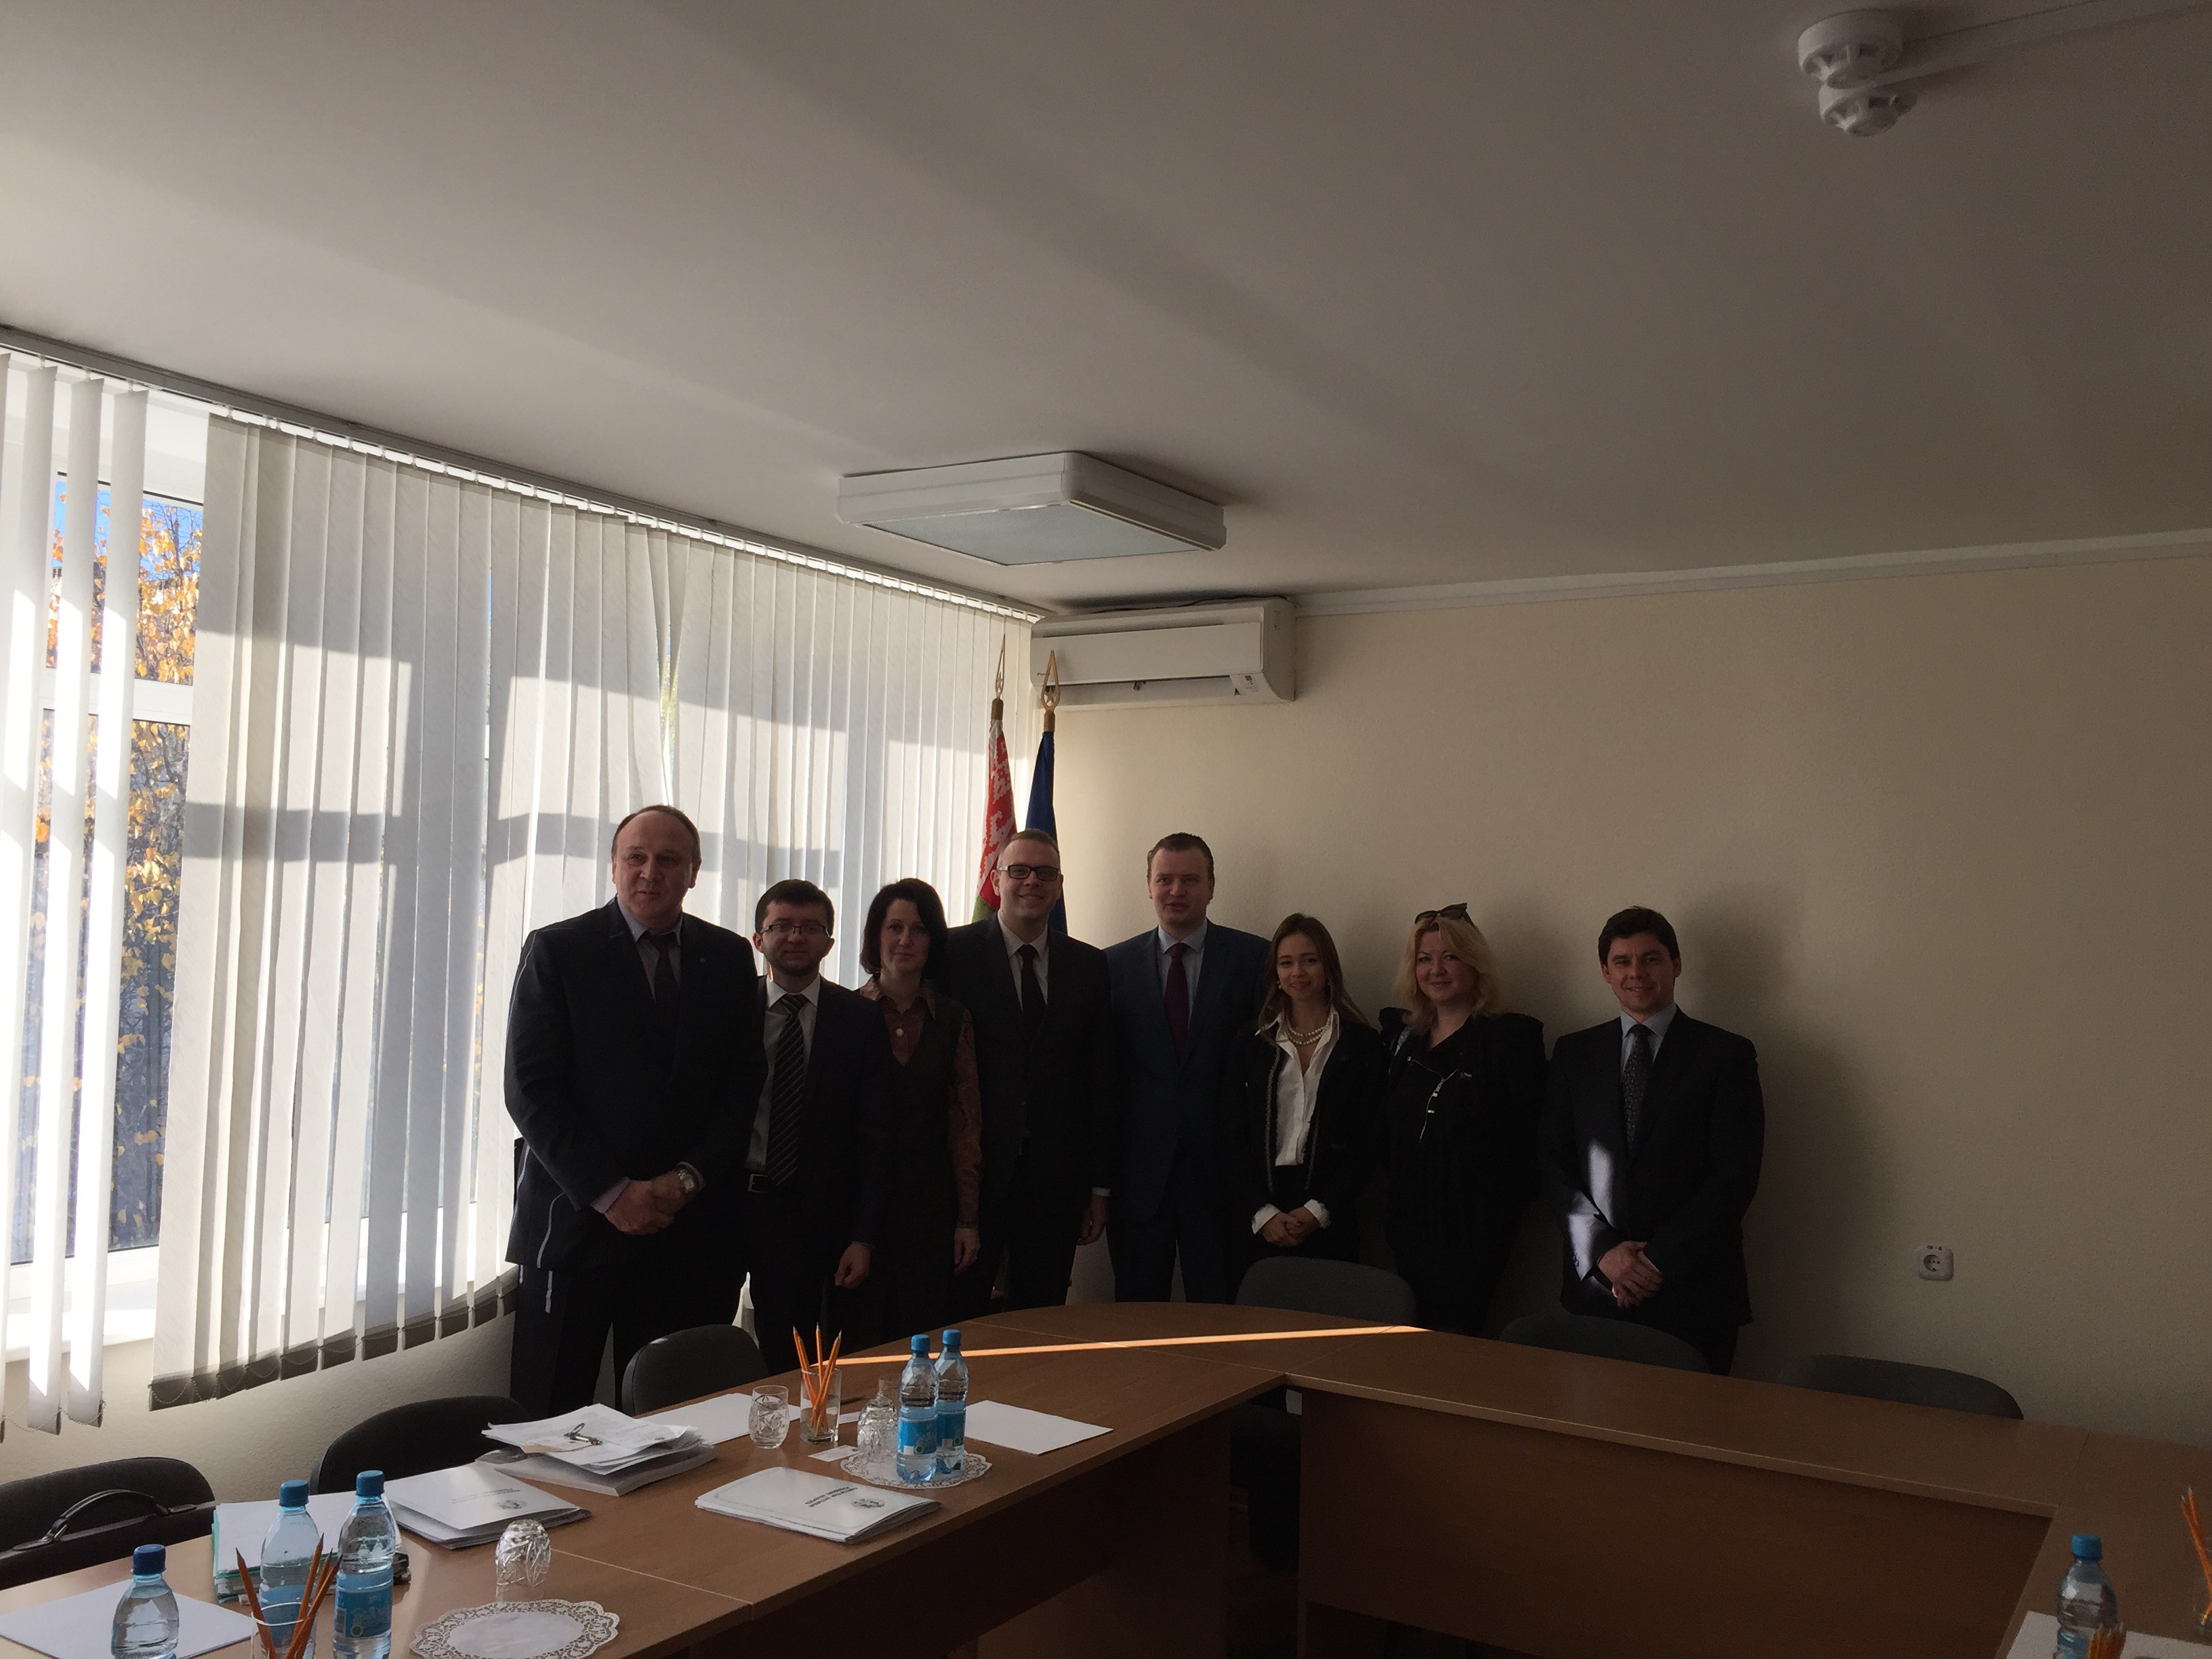 Молодые российские адвокаты встретились сегодня с руководством Министерства юстиции и представителями белорусской адвокатуры